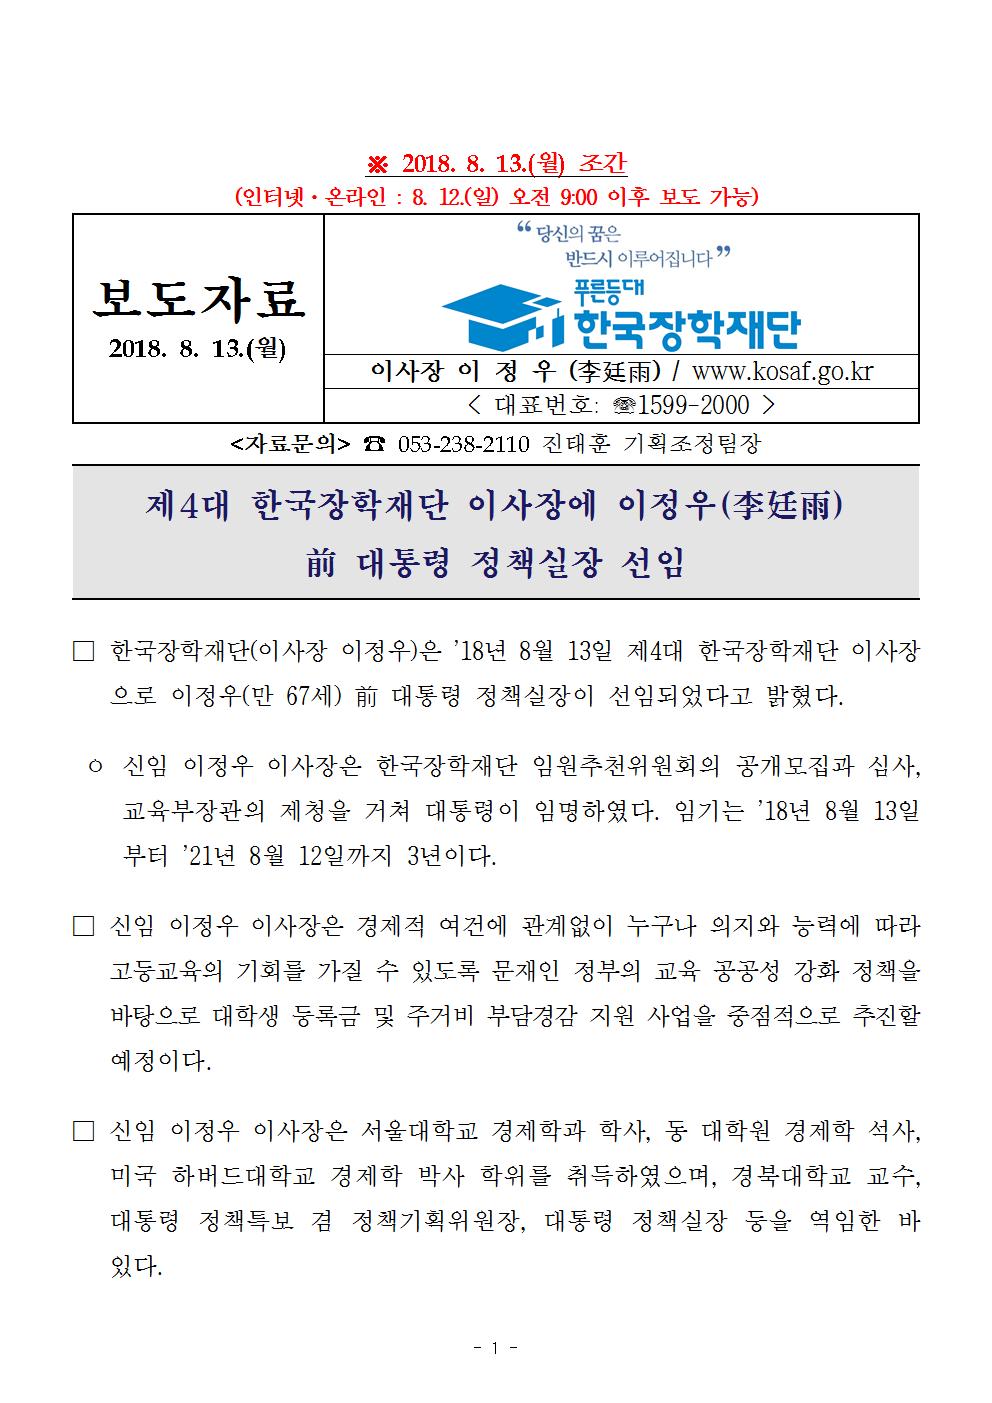 08-13(월)[보도자료] 제4대 한국장학재단 이사장 이정우 선임001.jpg